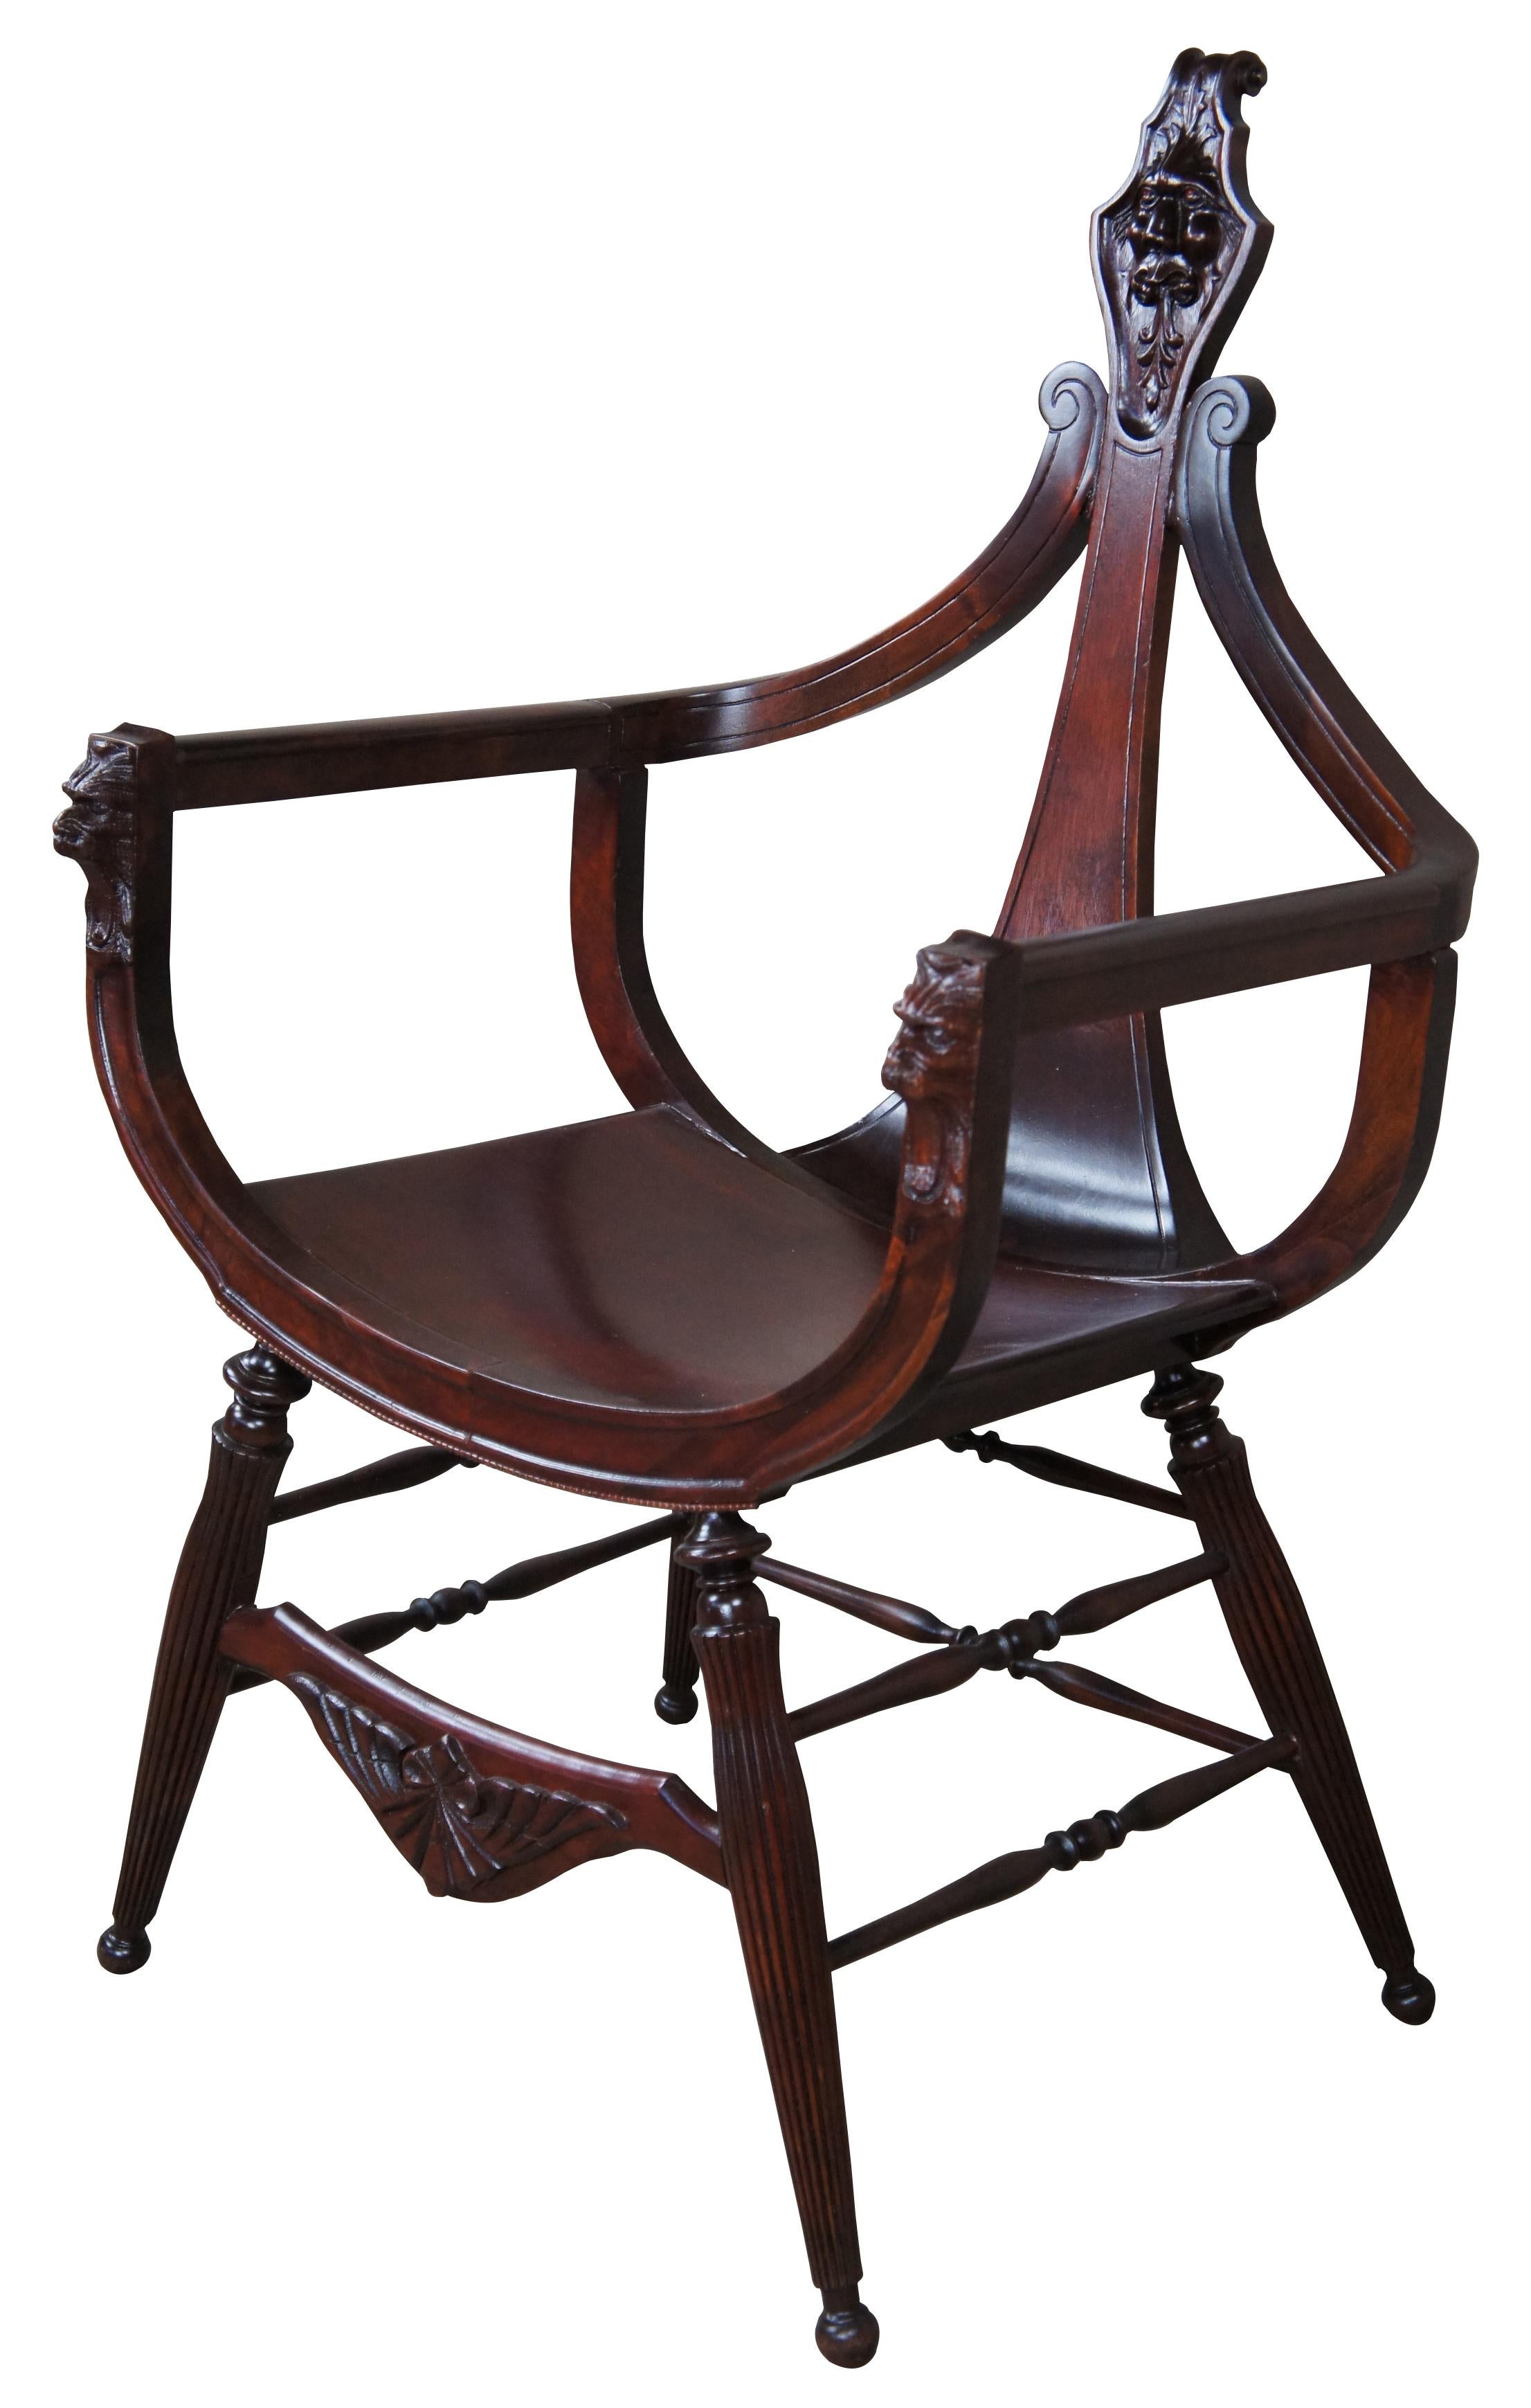 Un fauteuil d'appoint Victorien de la fin du 19ème siècle. Fabriqué en acajou avec une forme de siège curule ou selle et des sculptures en forme de tête de lion. L'arrière du col de violoncelle s'effile pour laisser place à une crête chantournée. Le